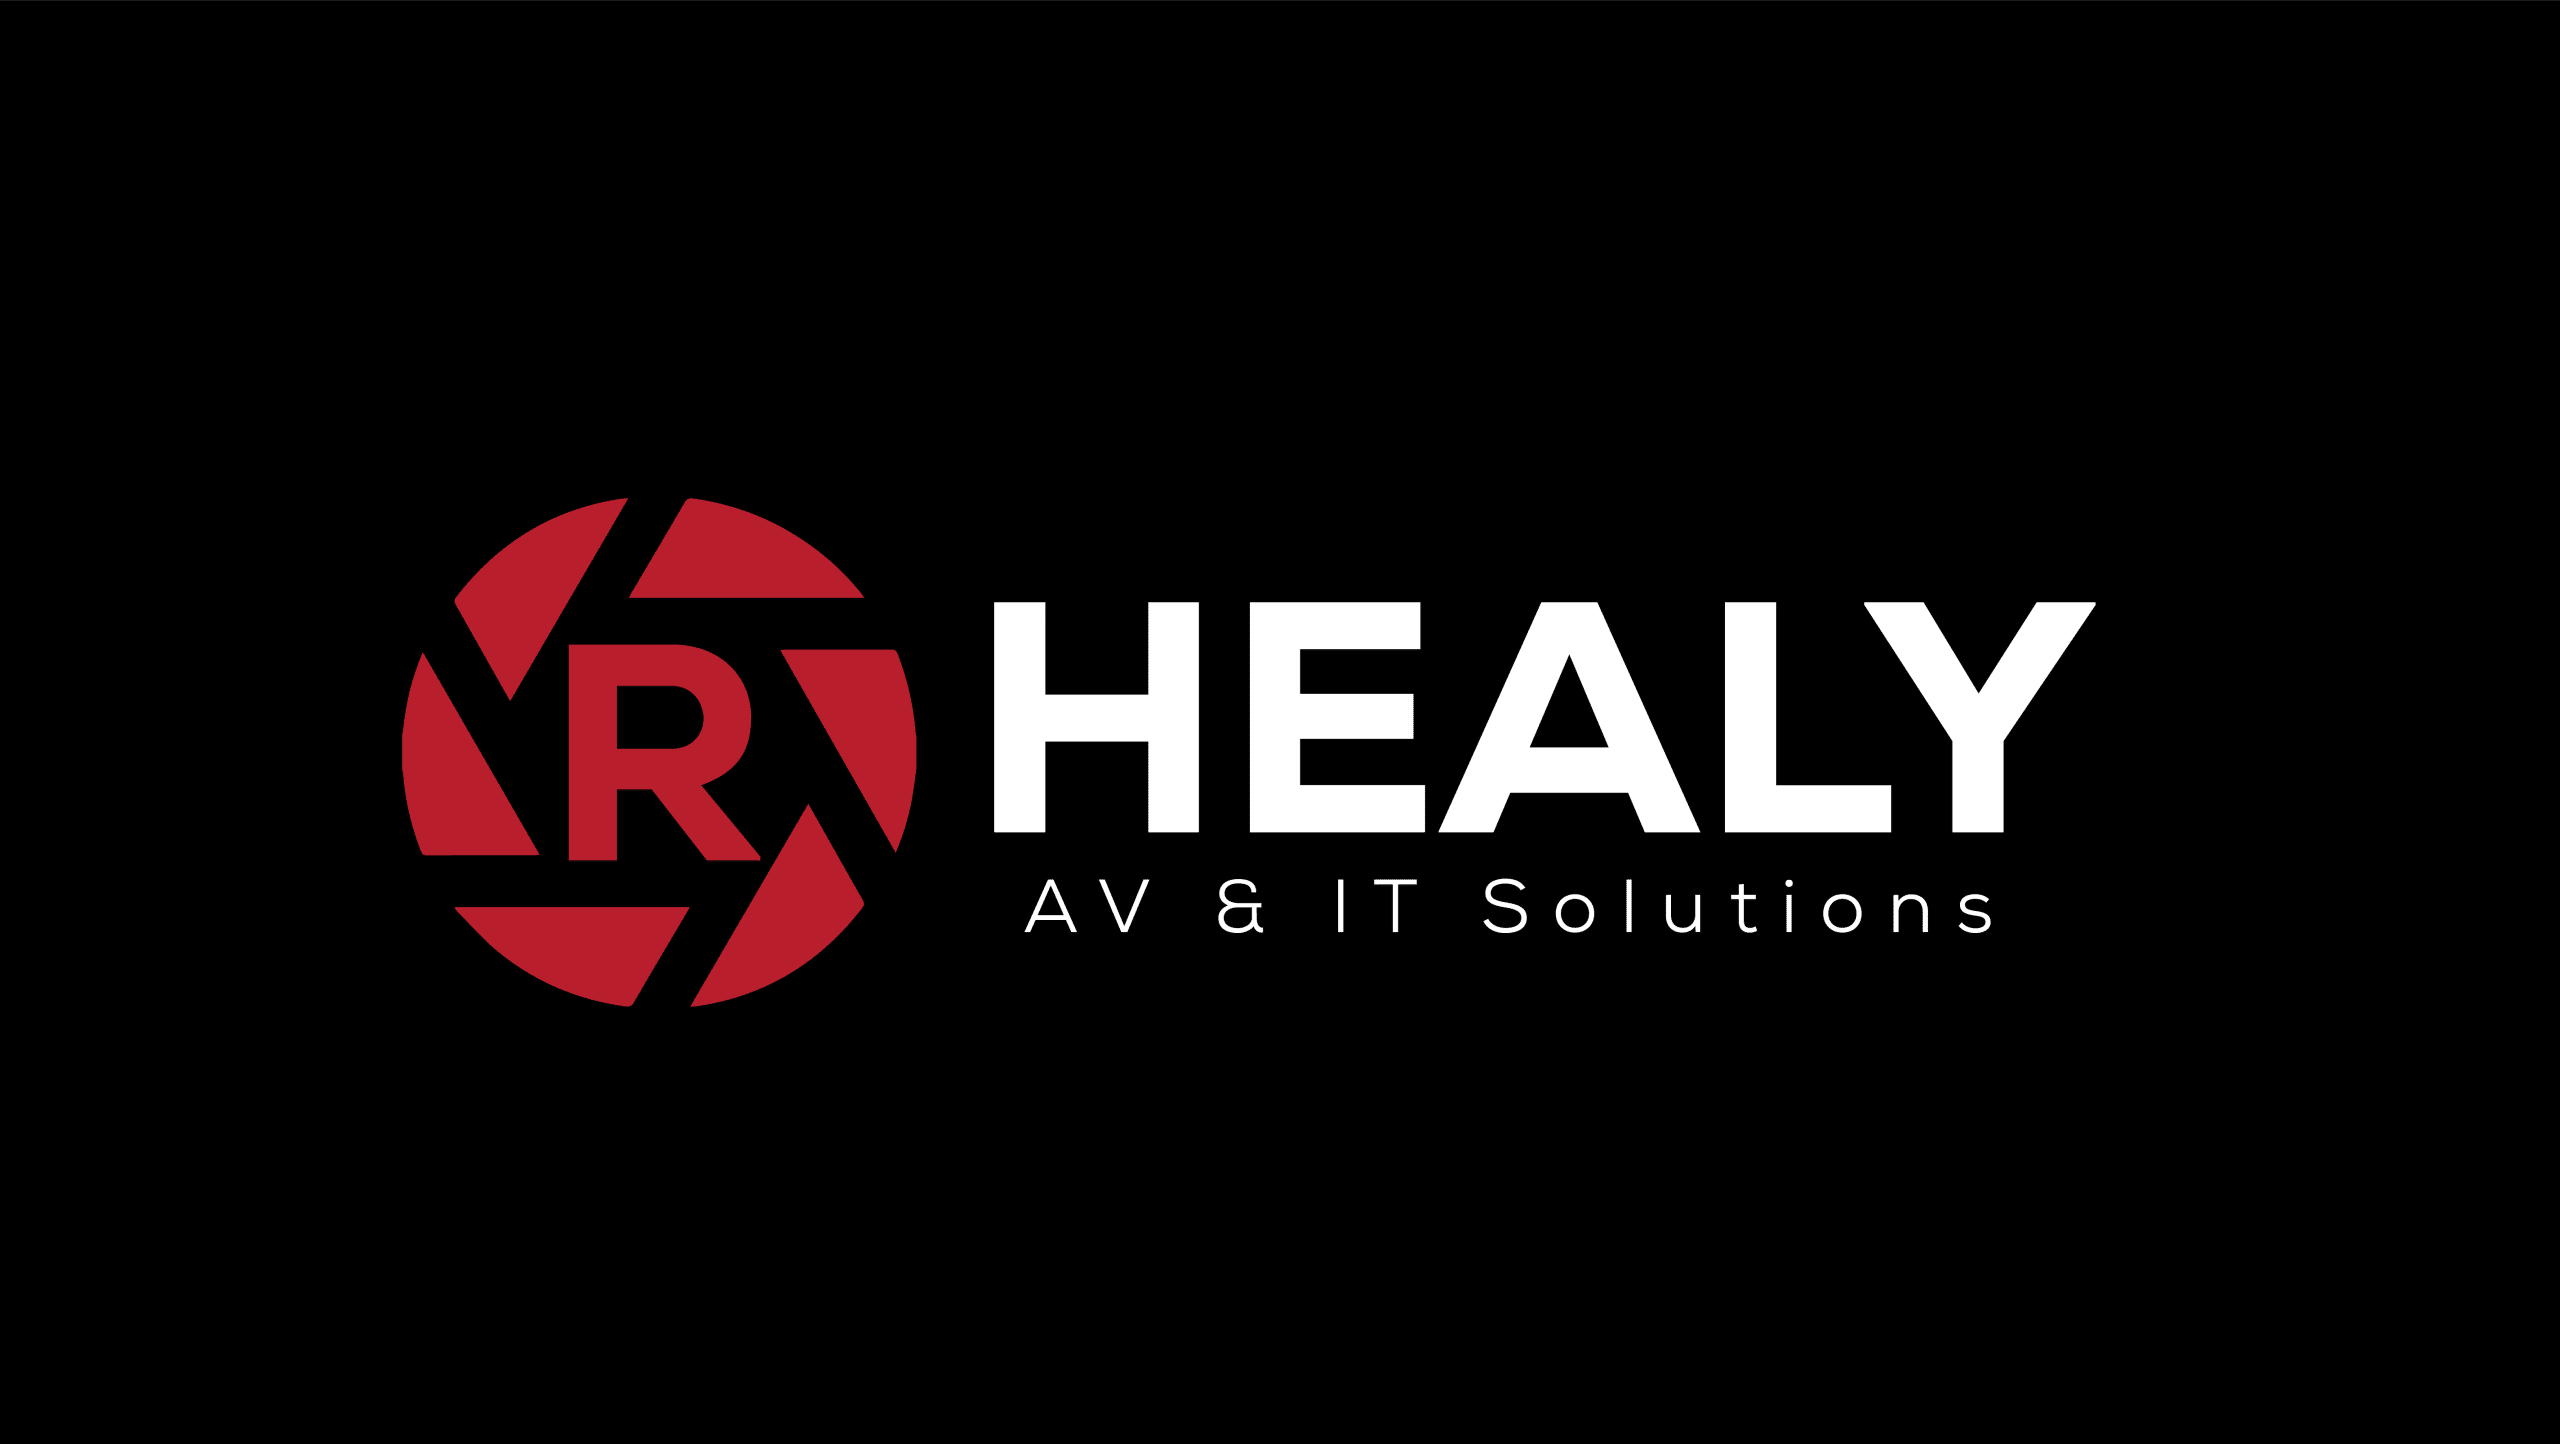 R Healy AV & IT Solutions Logo